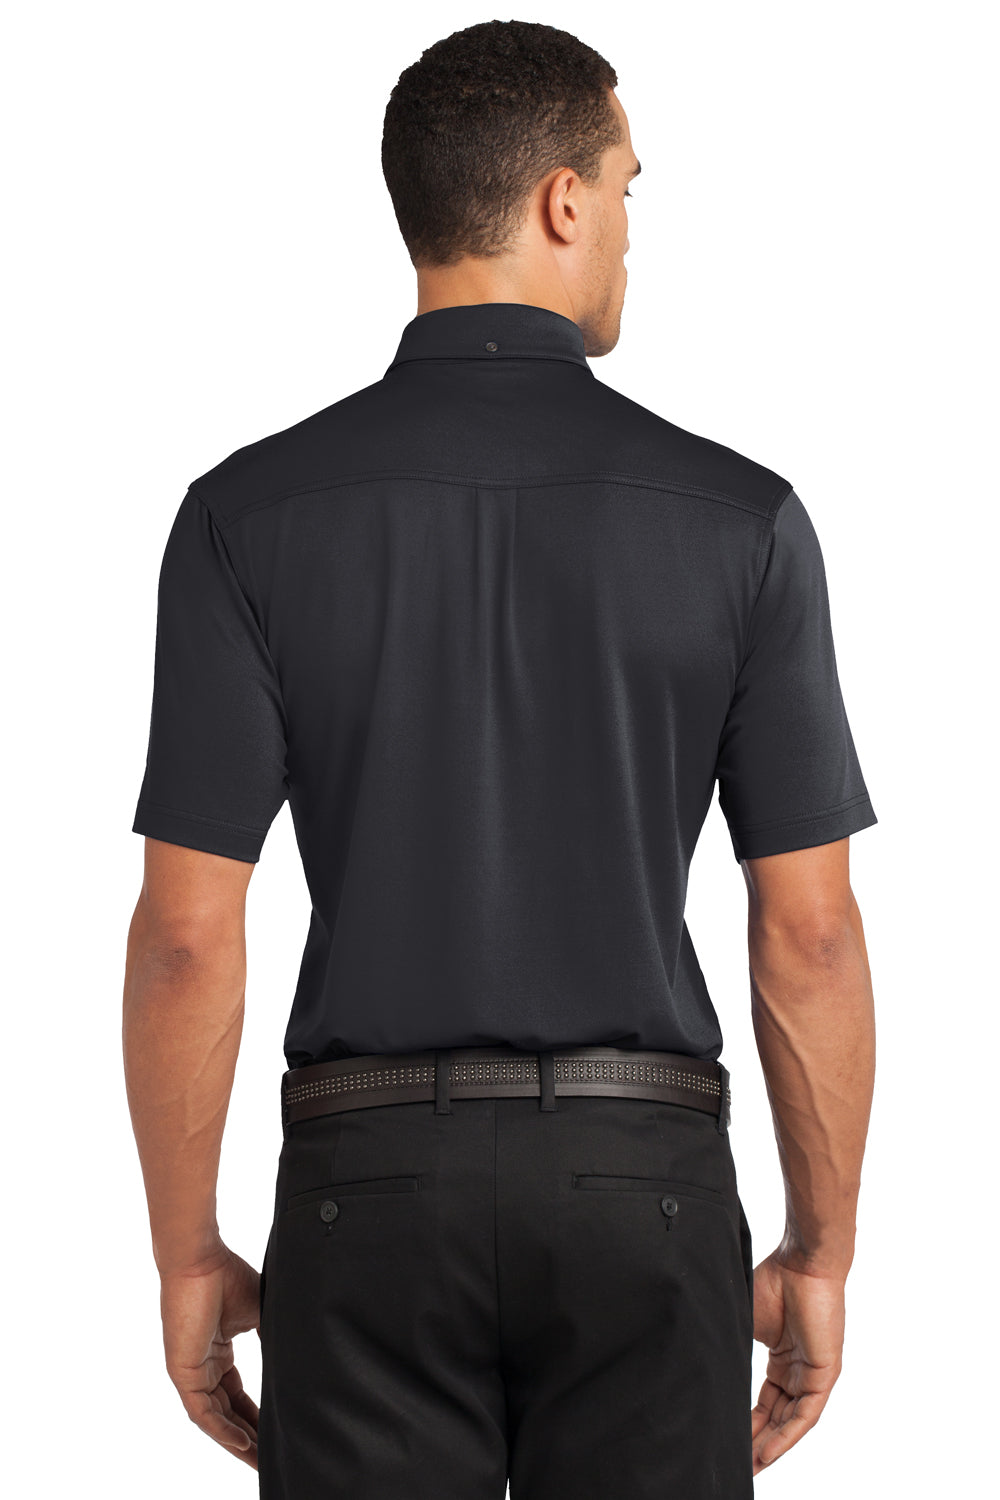 Ogio OG122 Mens Gauge Moisture Wicking Short Sleeve Polo Shirt Black Back